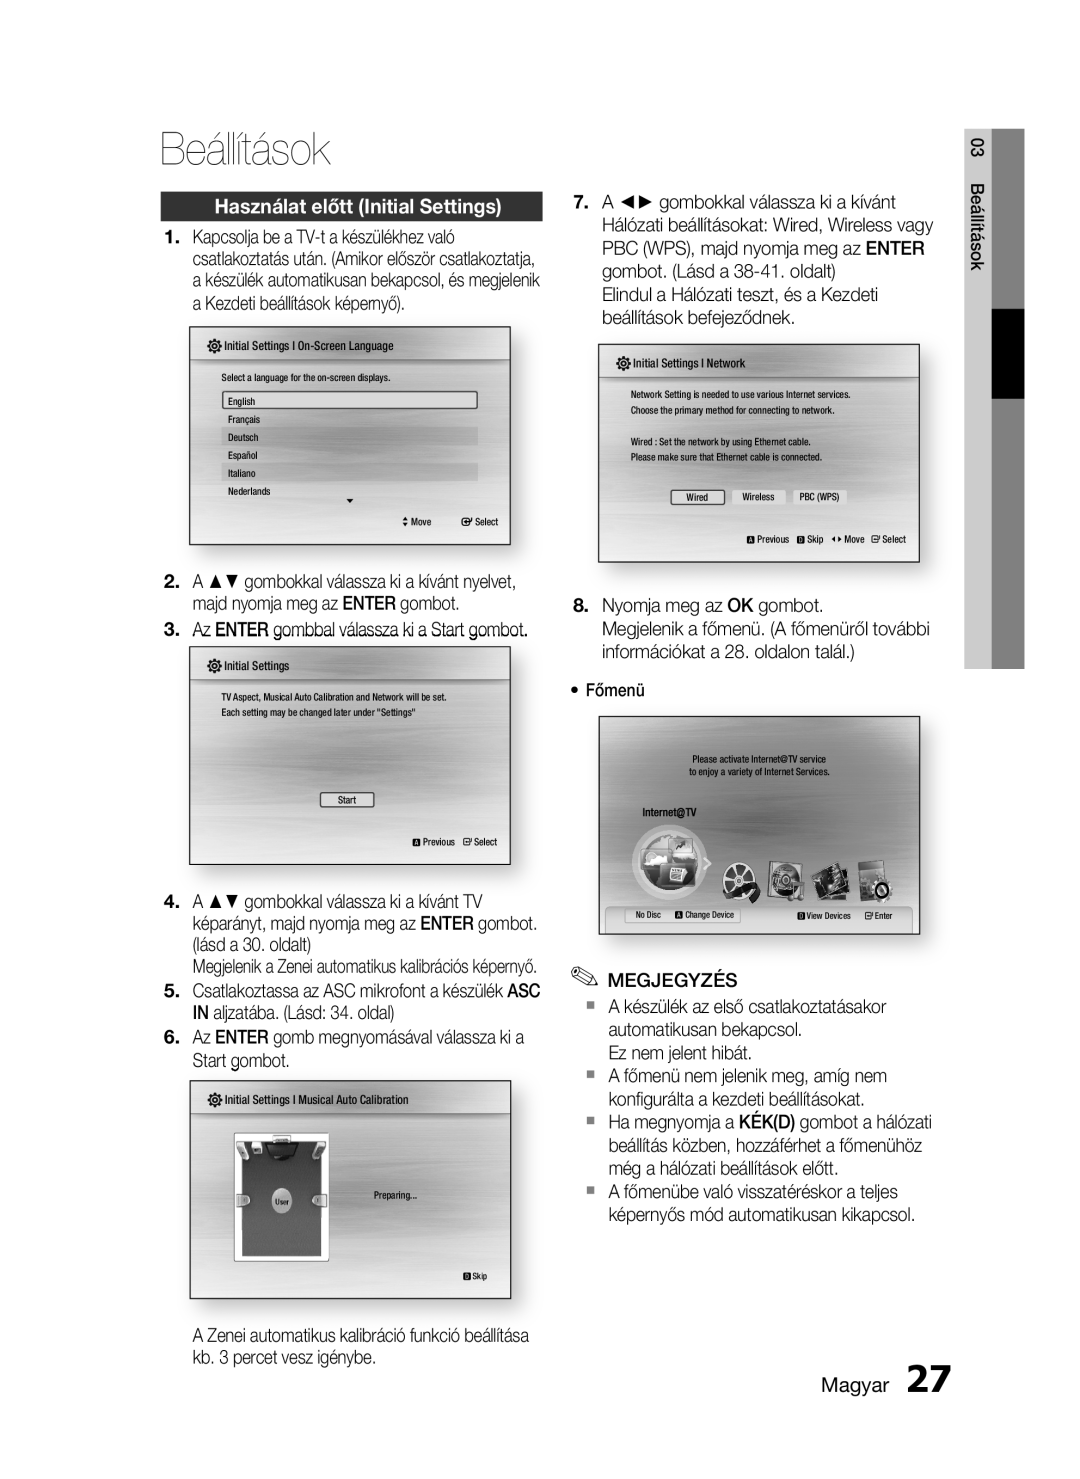 Samsung HT-C5900/XEE, HT-C5900/XEF manual Használat előtt Initial Settings, Magyar, 03 Beállítások 